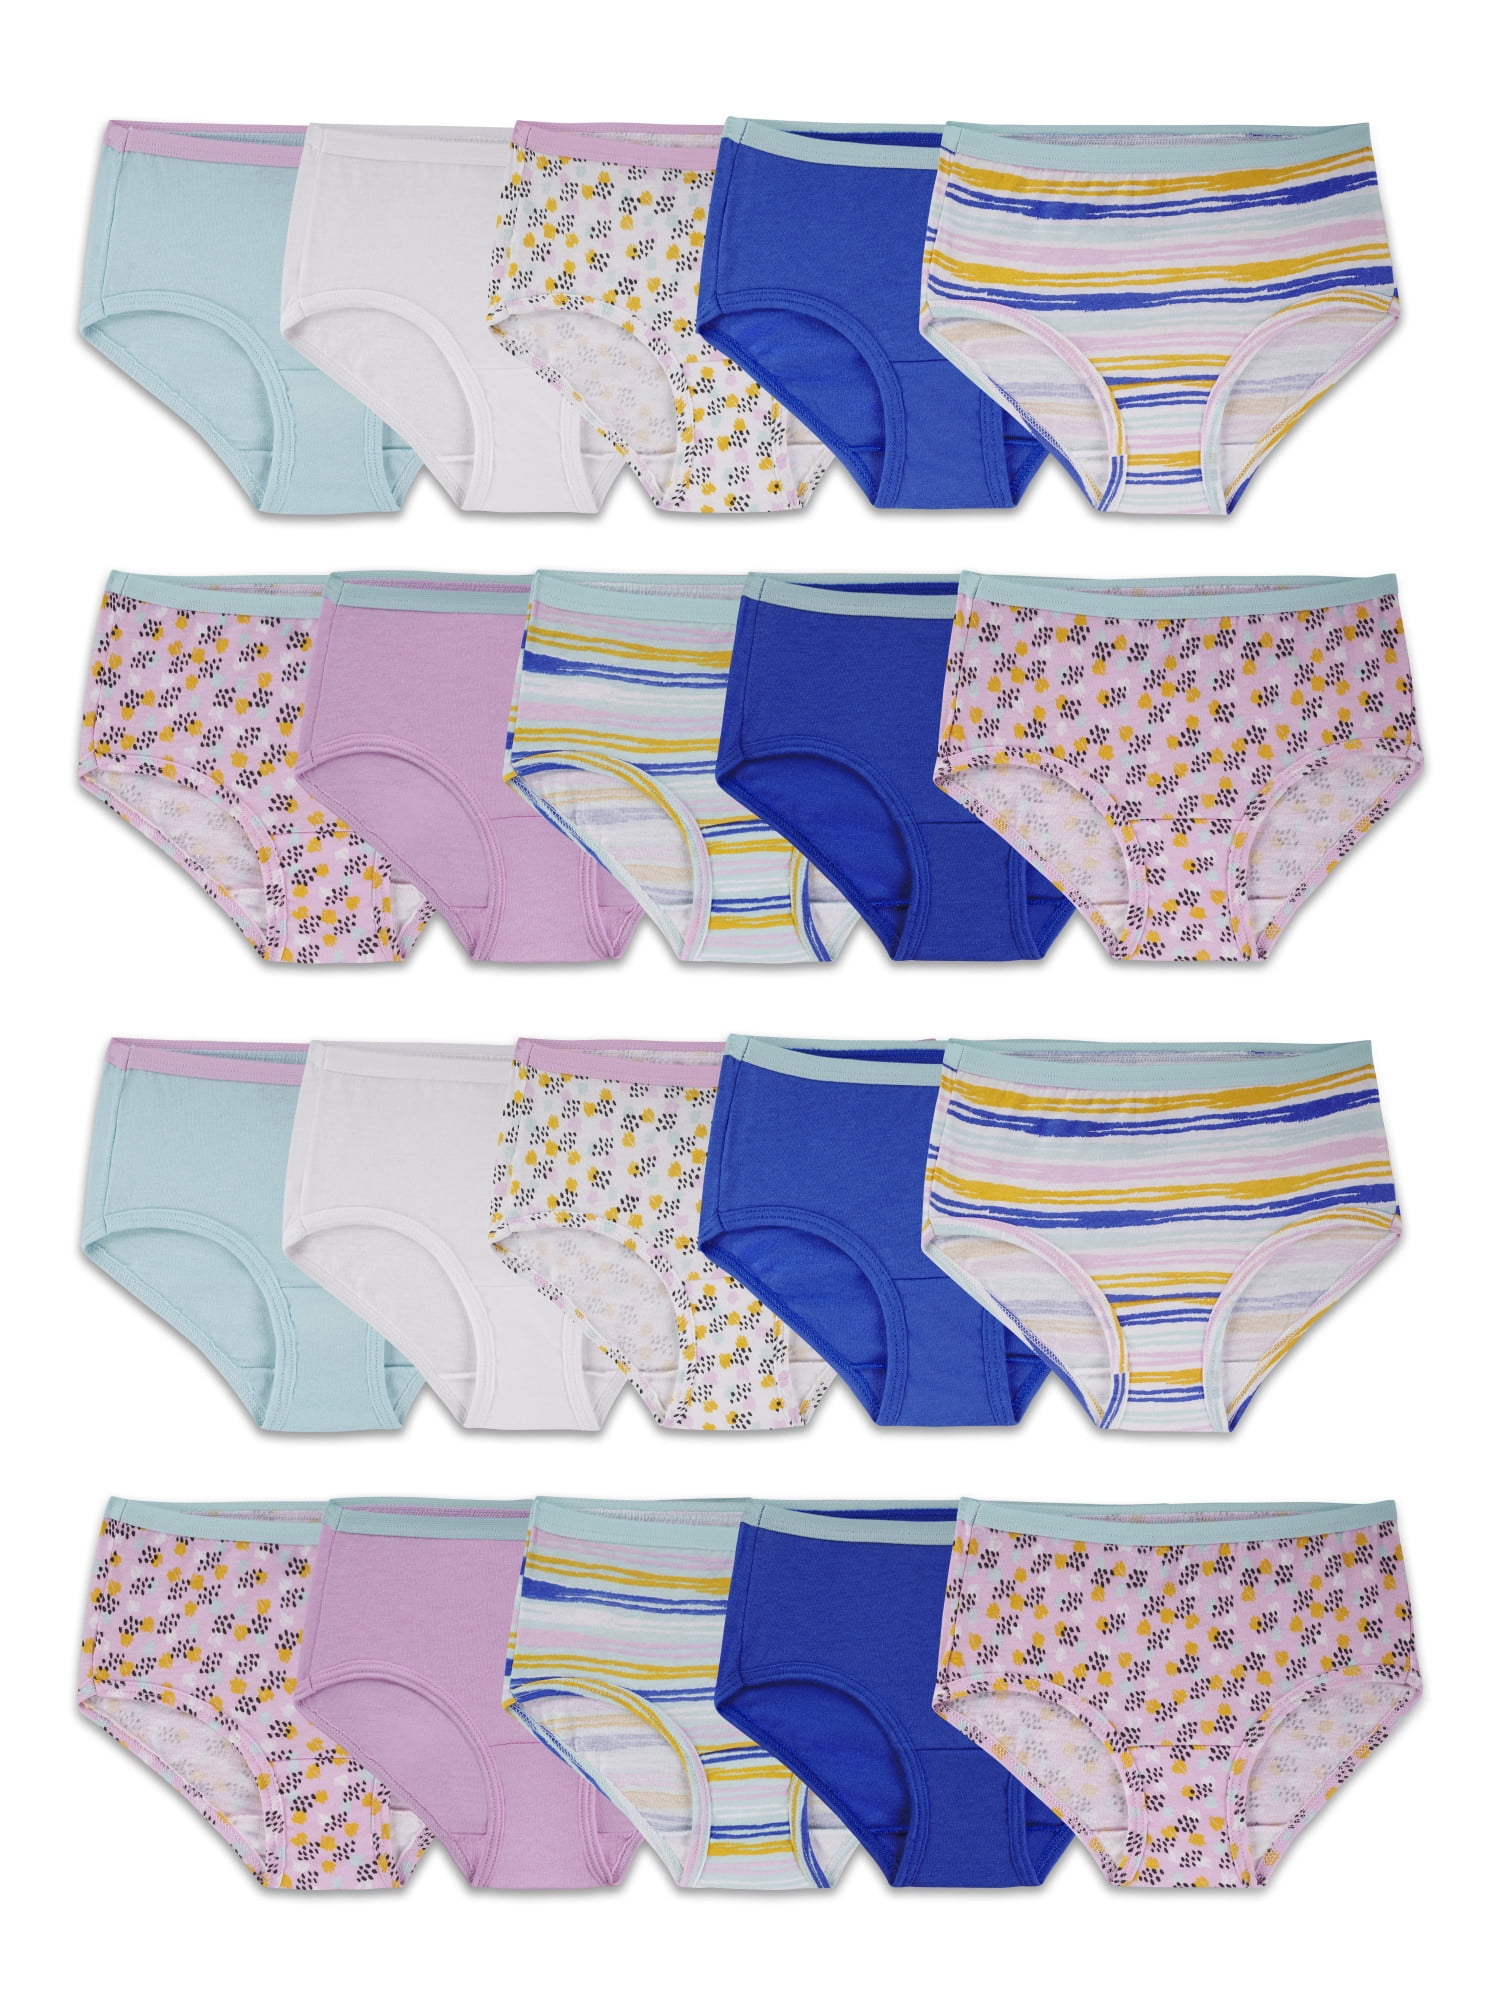 Girls Cotton Brief Underwear, 20 Pack, Sizes 4-16 UK